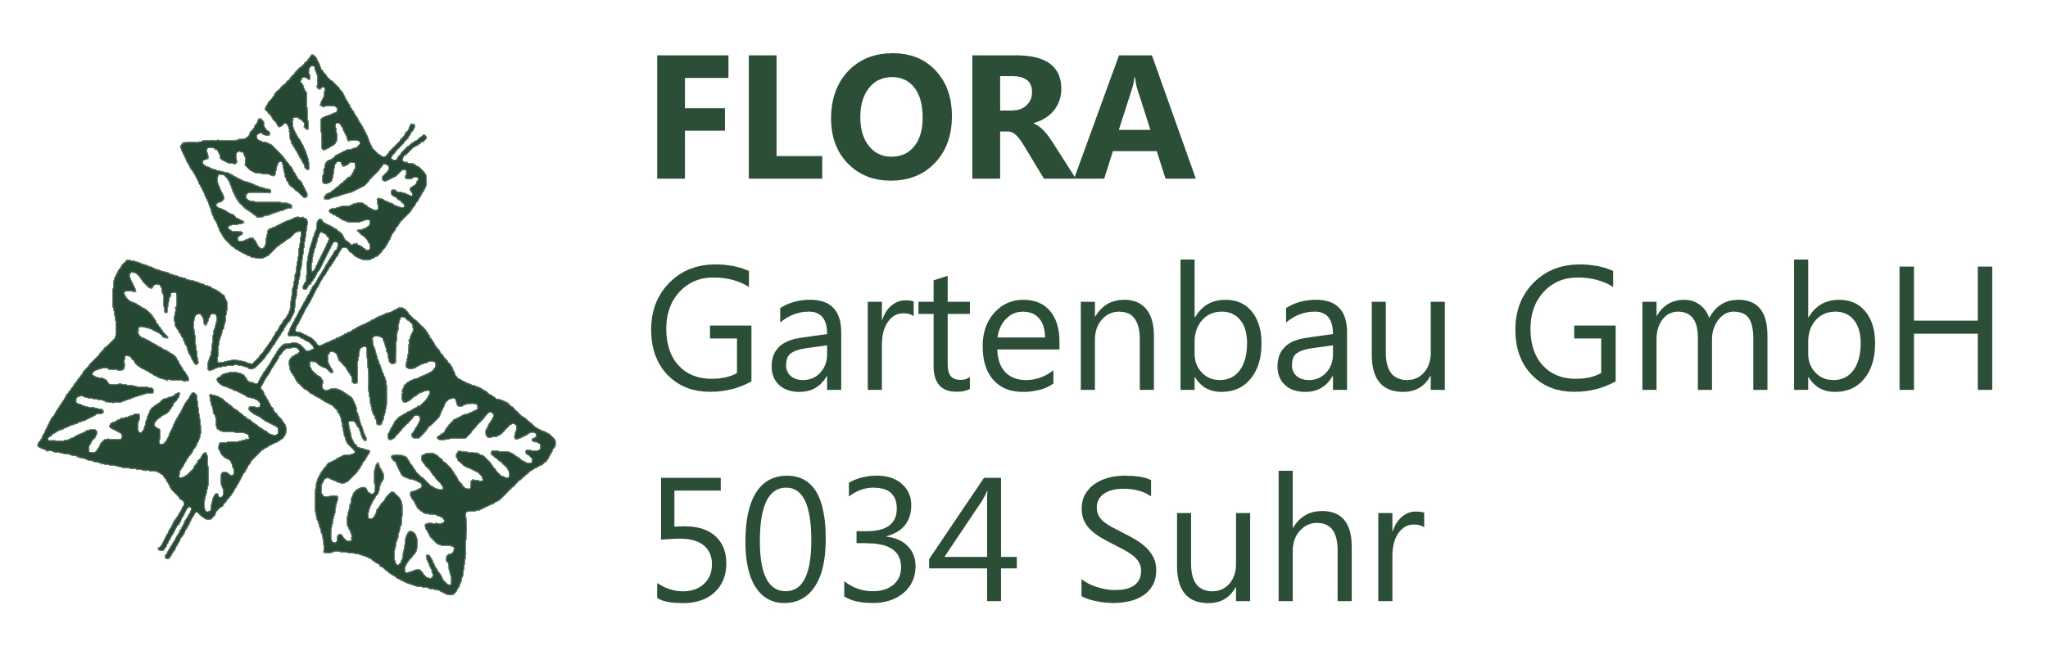 FLORA Gartenbau GmbH